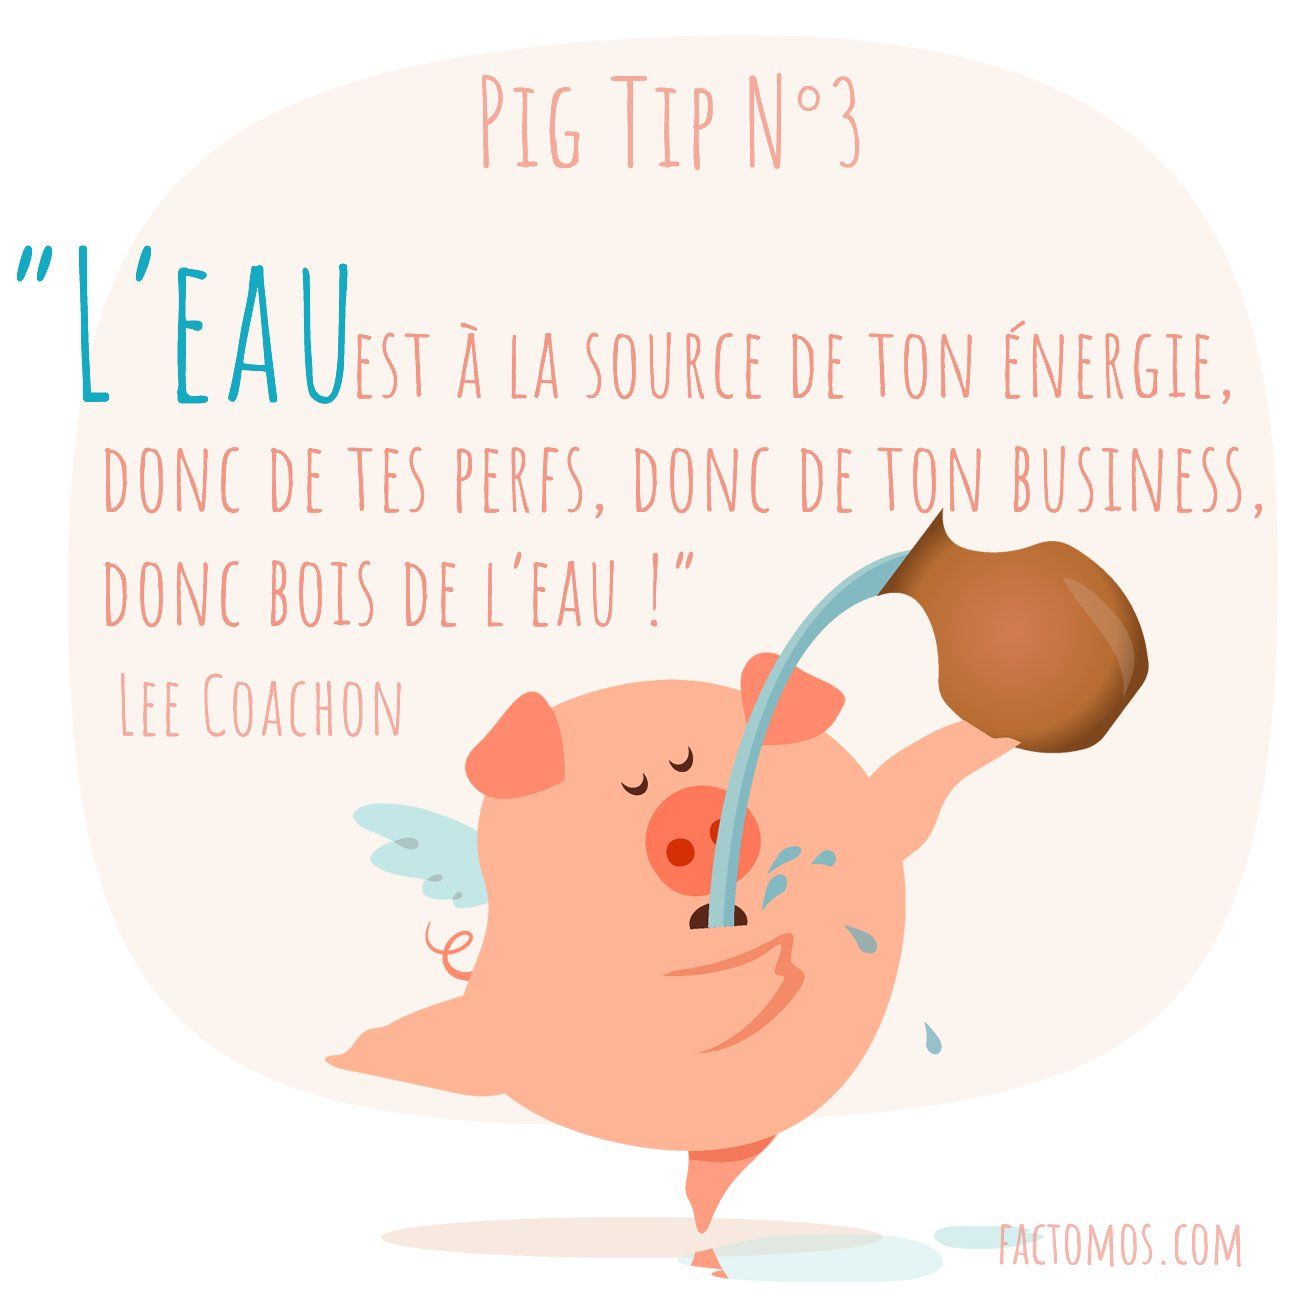 Pig Tip #3